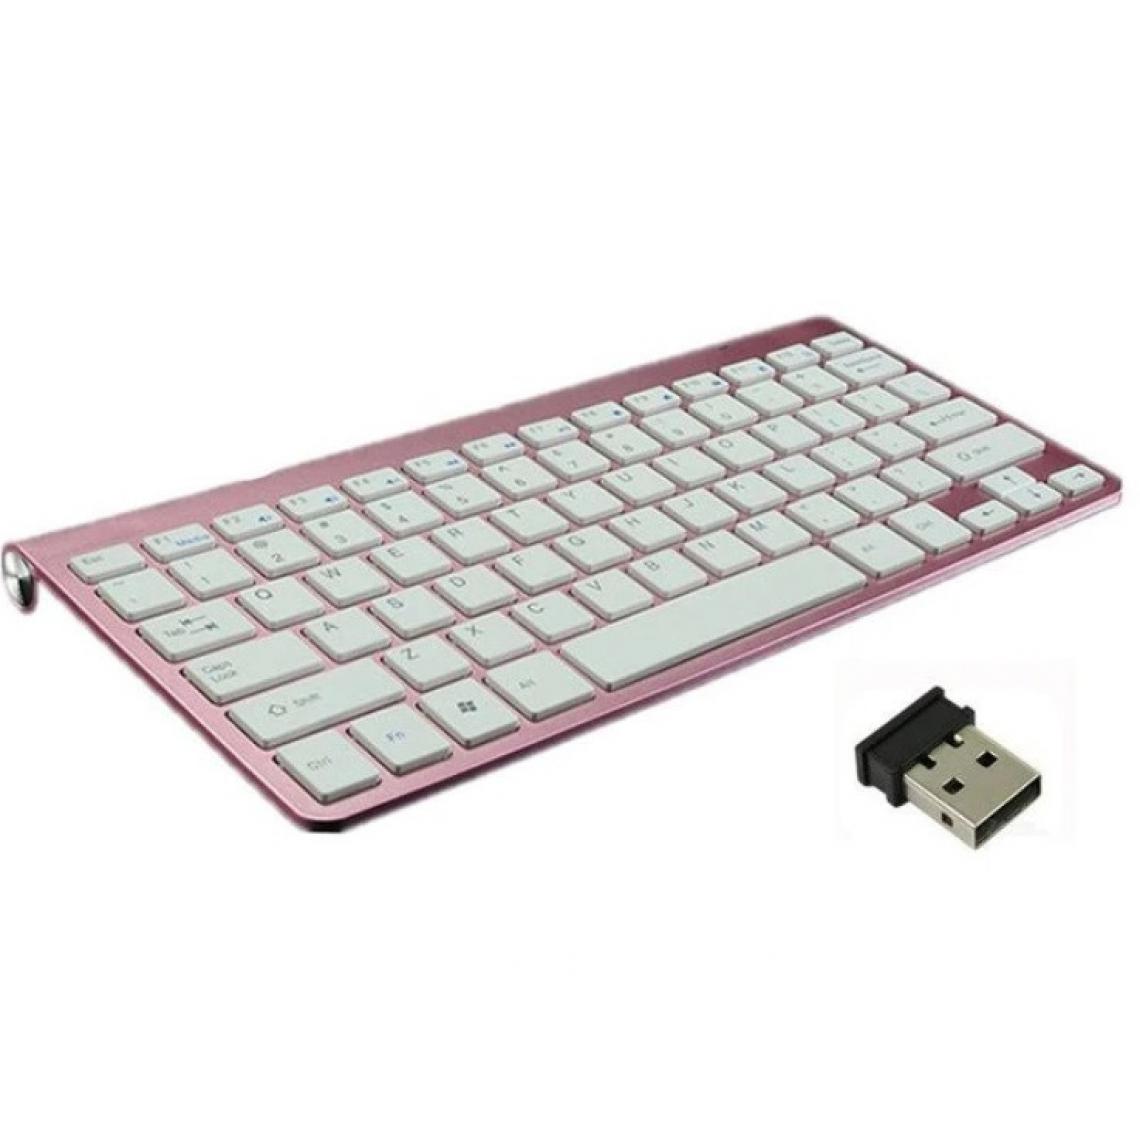 Shot - Clavier Sans Fil Metal pour PC FUJITSU  USB QWERTY Piles (ROSE) - Clavier